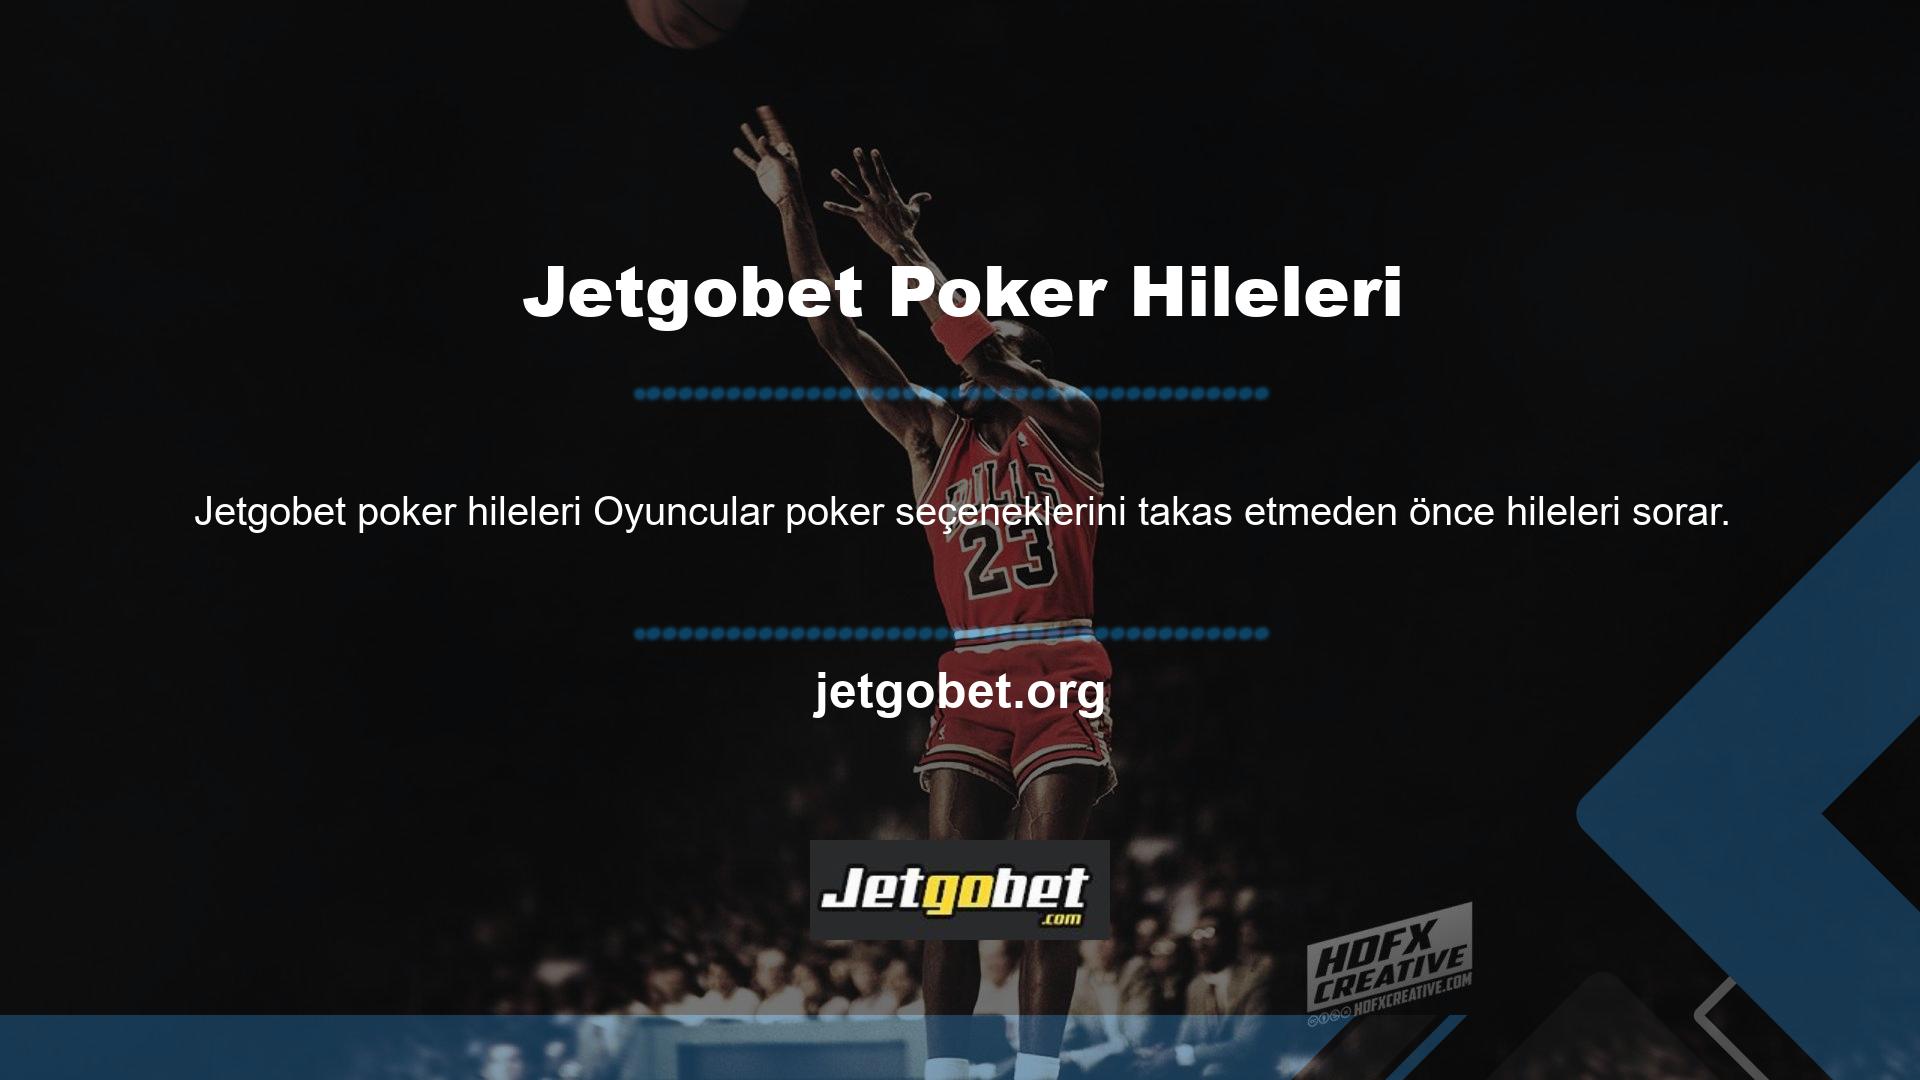 Jetgobet Poker'de hile var mı diye sorulduğunda site hayır dedi